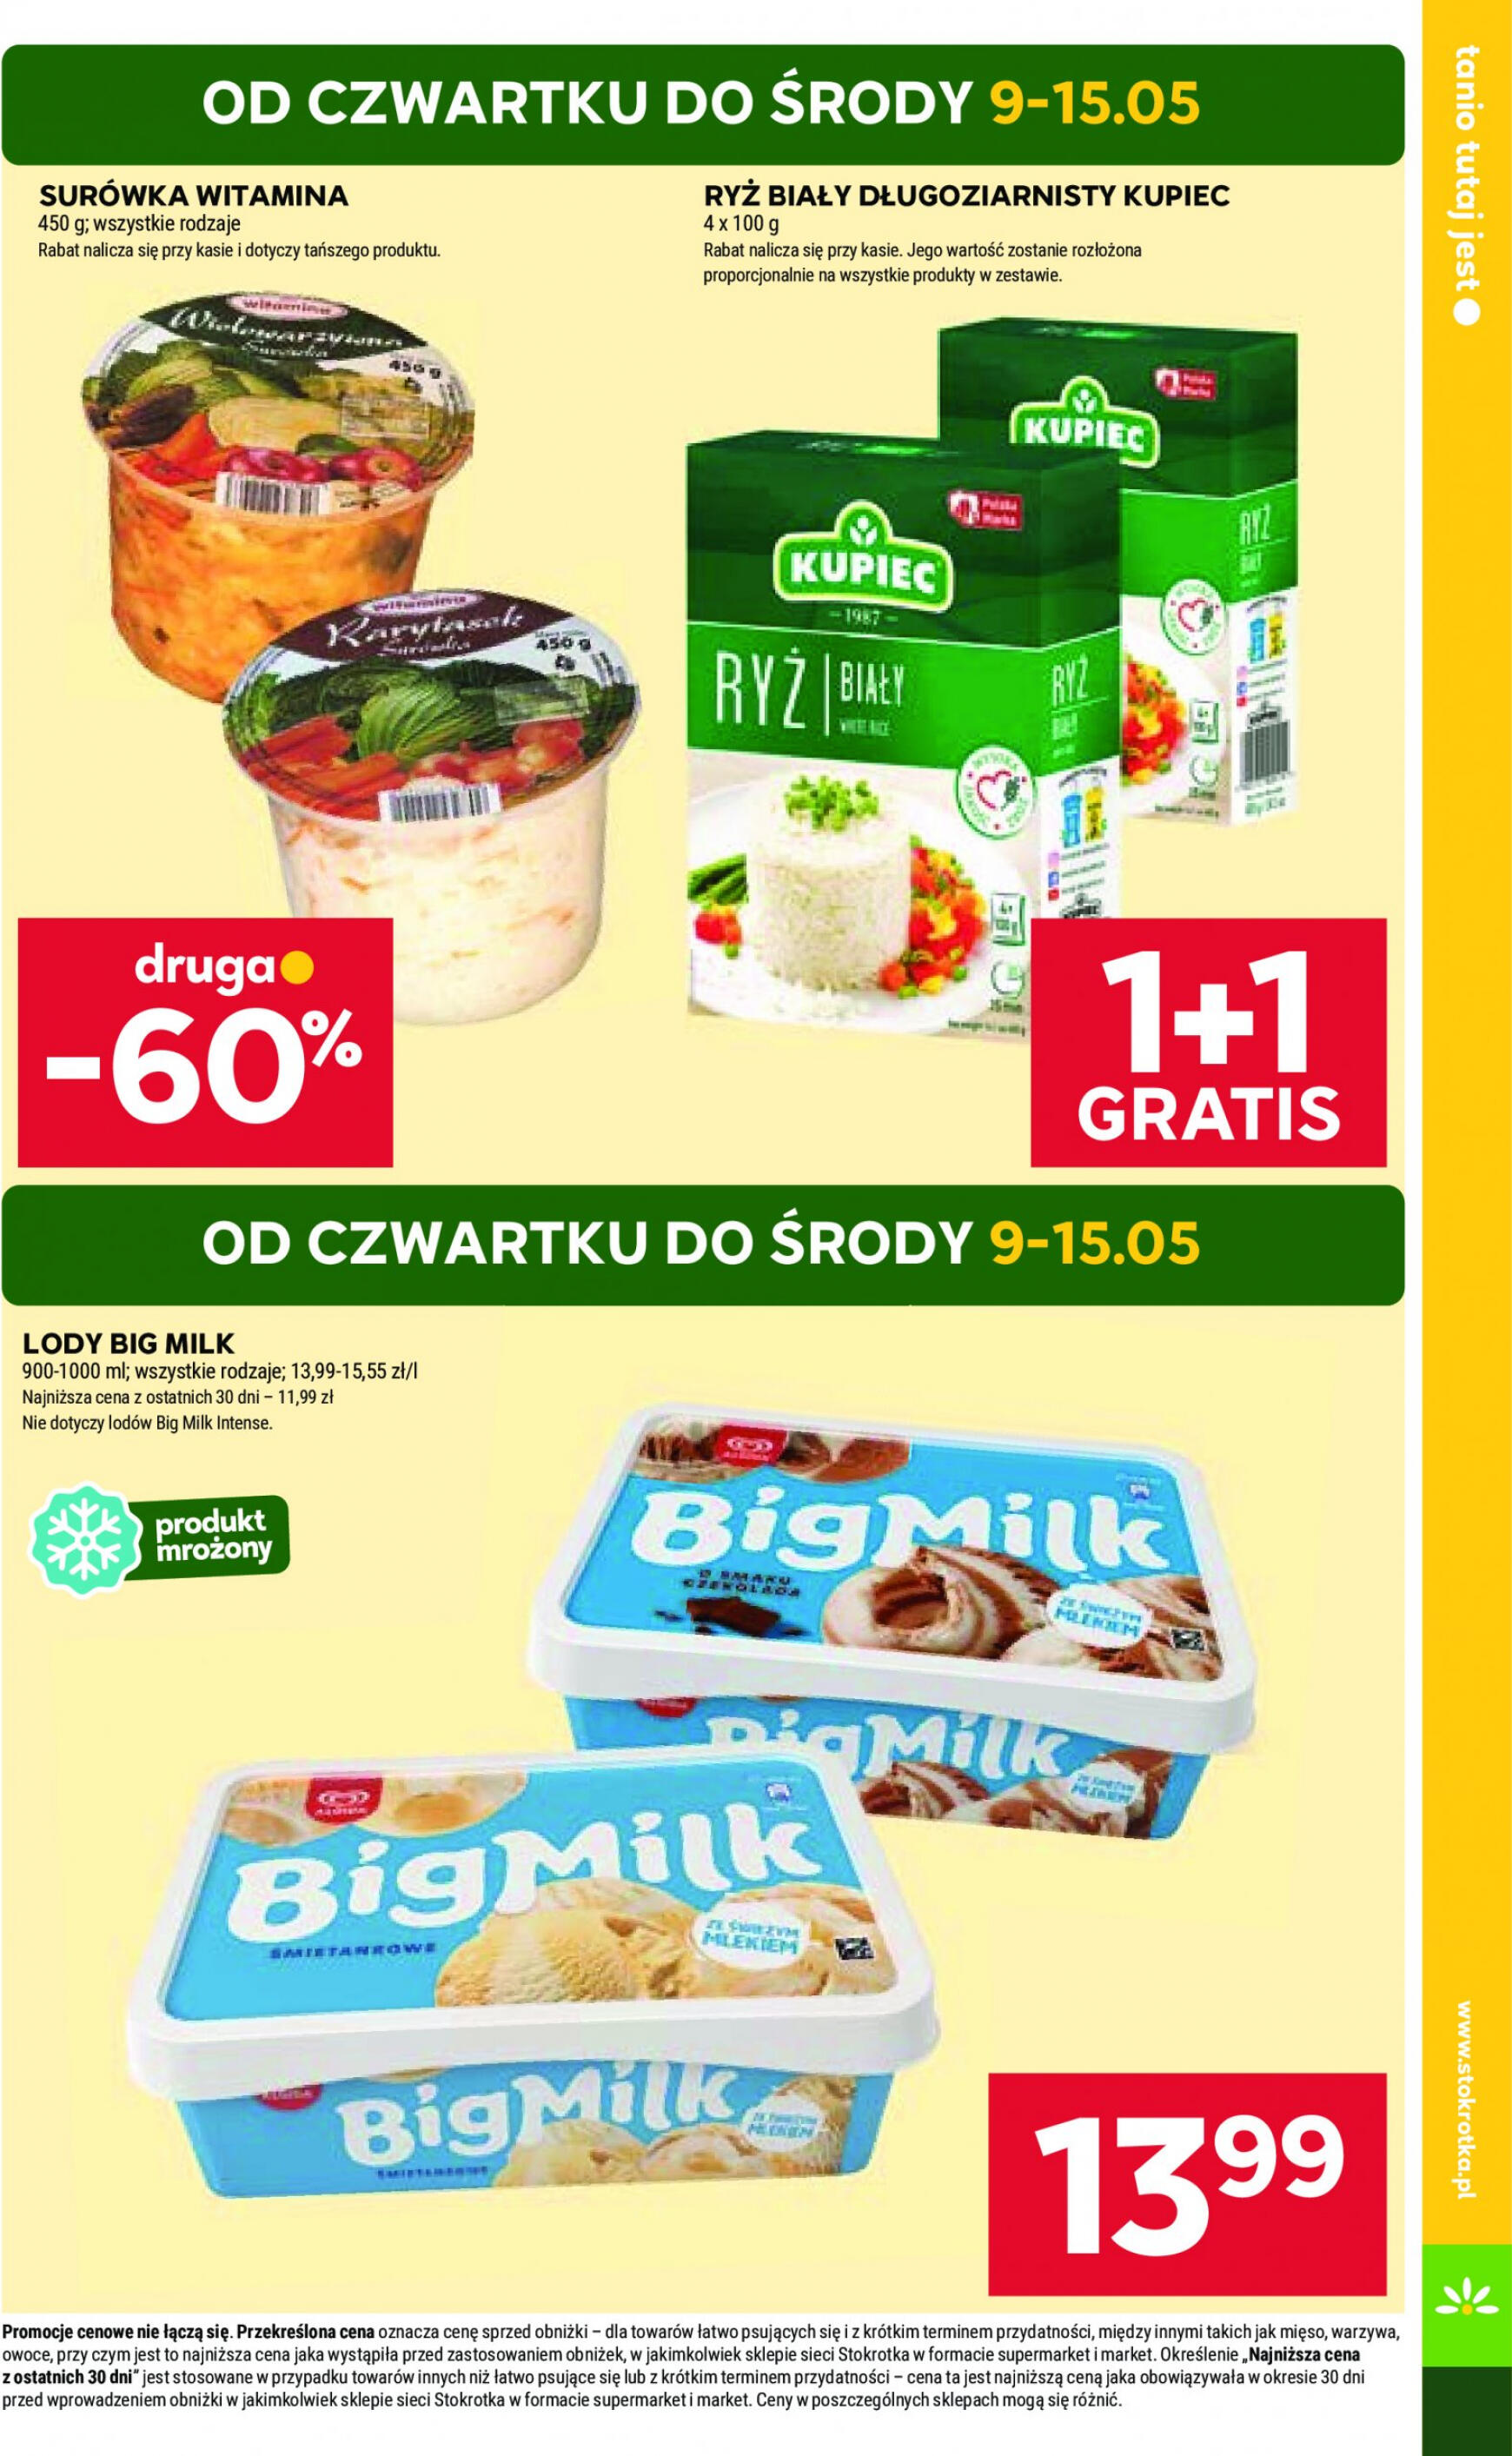 stokrotka - Stokrotka Market gazetka aktualna ważna od 09.05. - 15.05. - page: 3